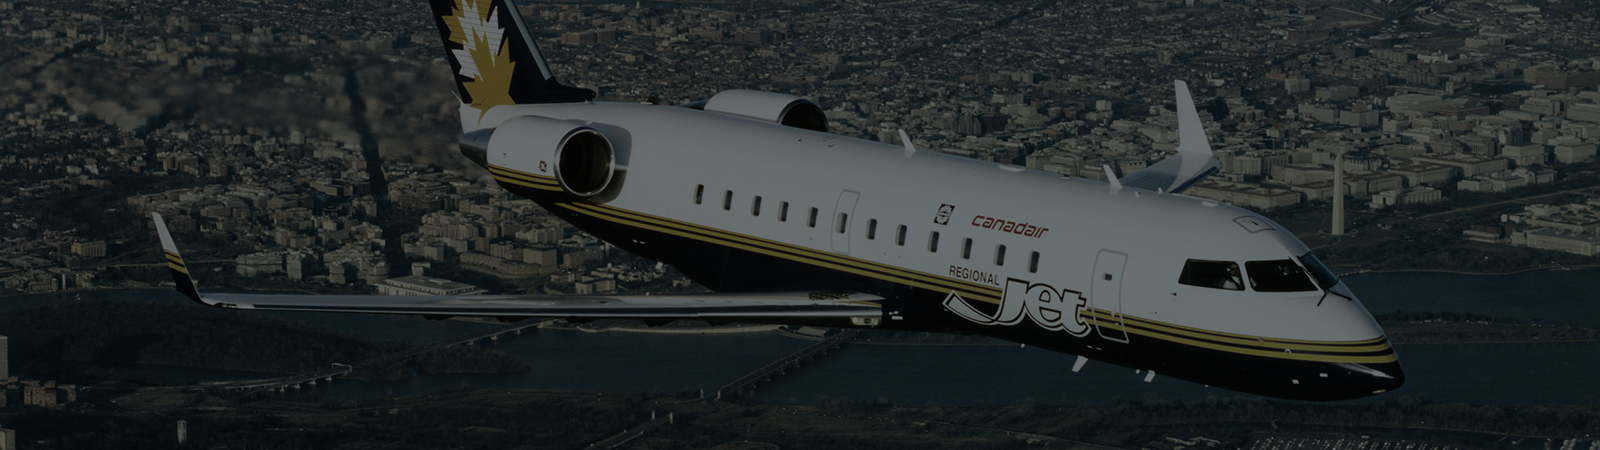 MHIRJ regional jet flying over a city